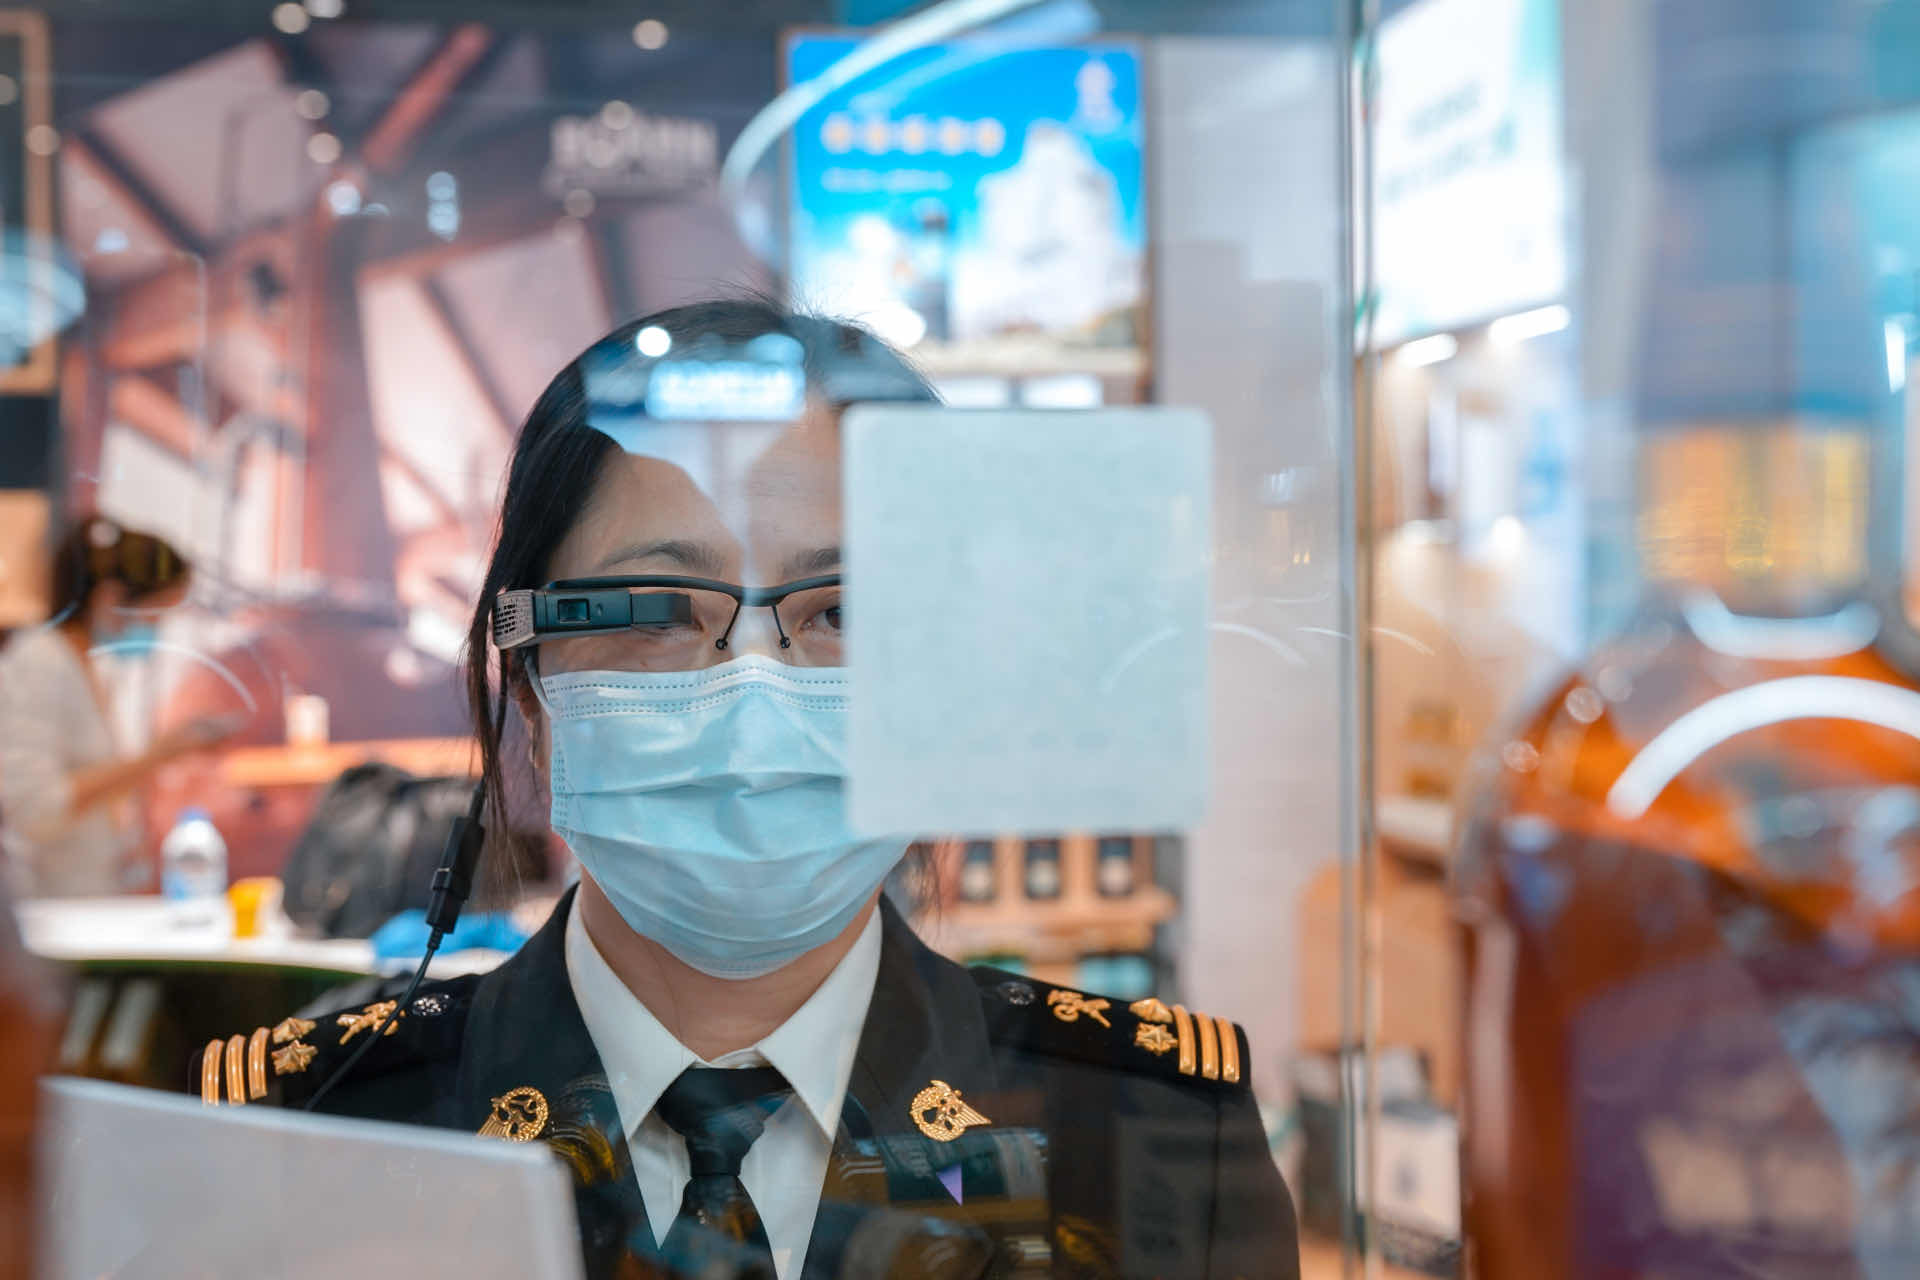 上海海关首次运用AR眼镜、数字标签等新技术开展智慧巡馆、展品监管工作。 本文图片均为上海海关提供